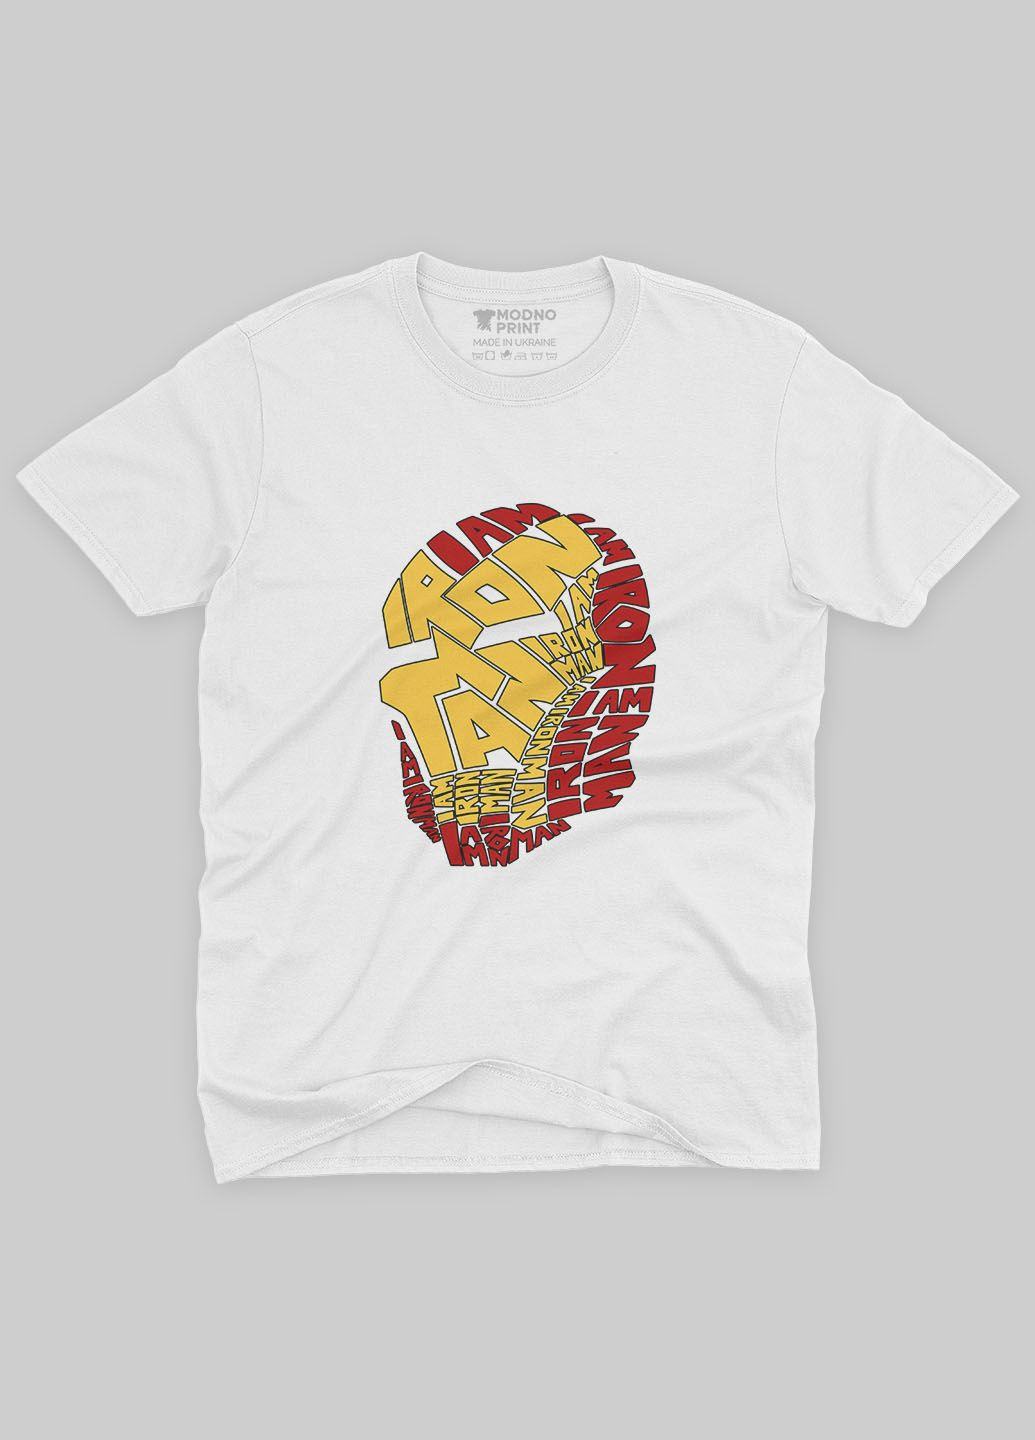 Белая демисезонная футболка для мальчика с принтом супергероя - железный человек (ts001-1-whi-006-016-001-b) Modno